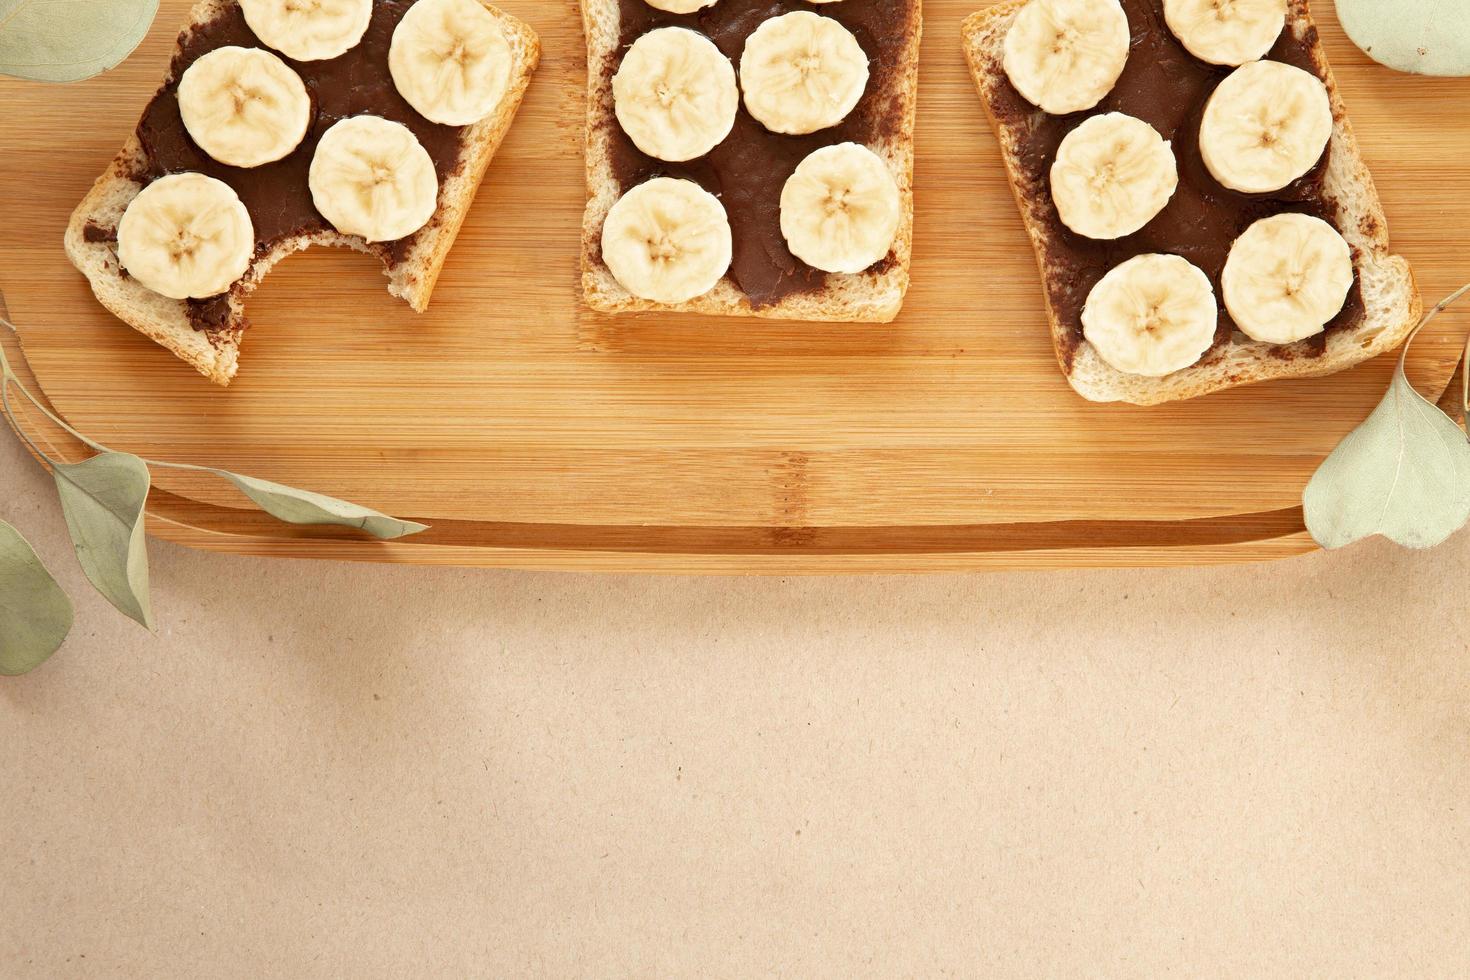 trois toasts de pain blanc à la banane enduits de beurre au chocolat photo